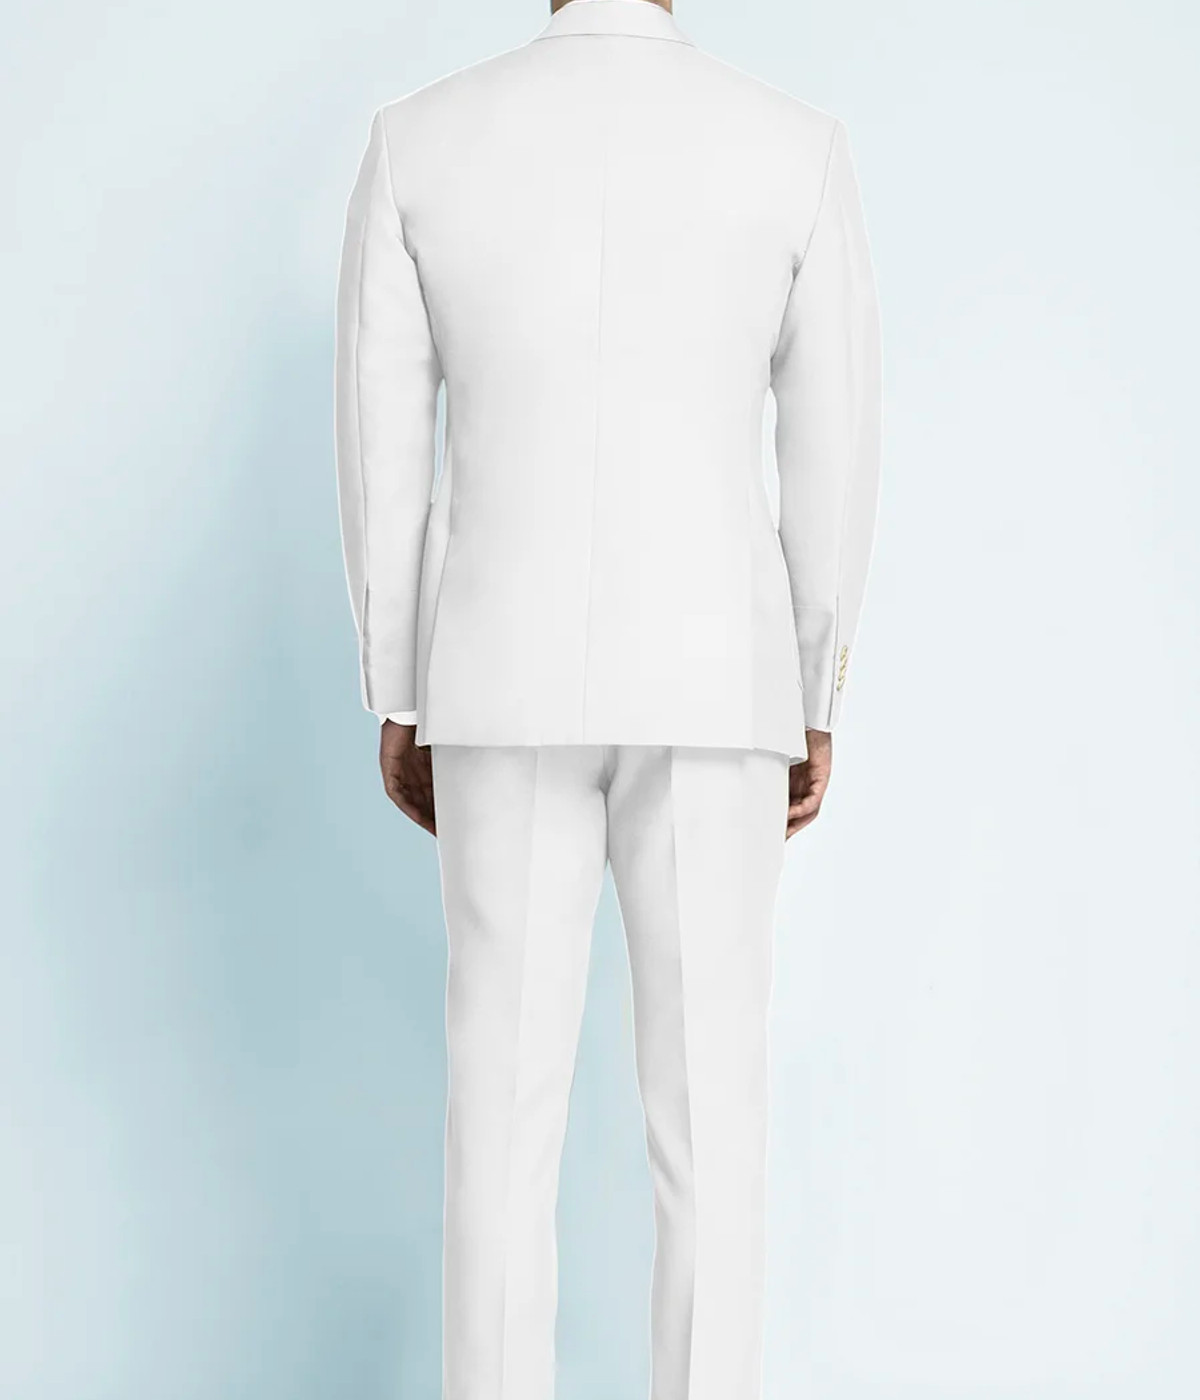 Napoli White Cotton Suit - Hangrr